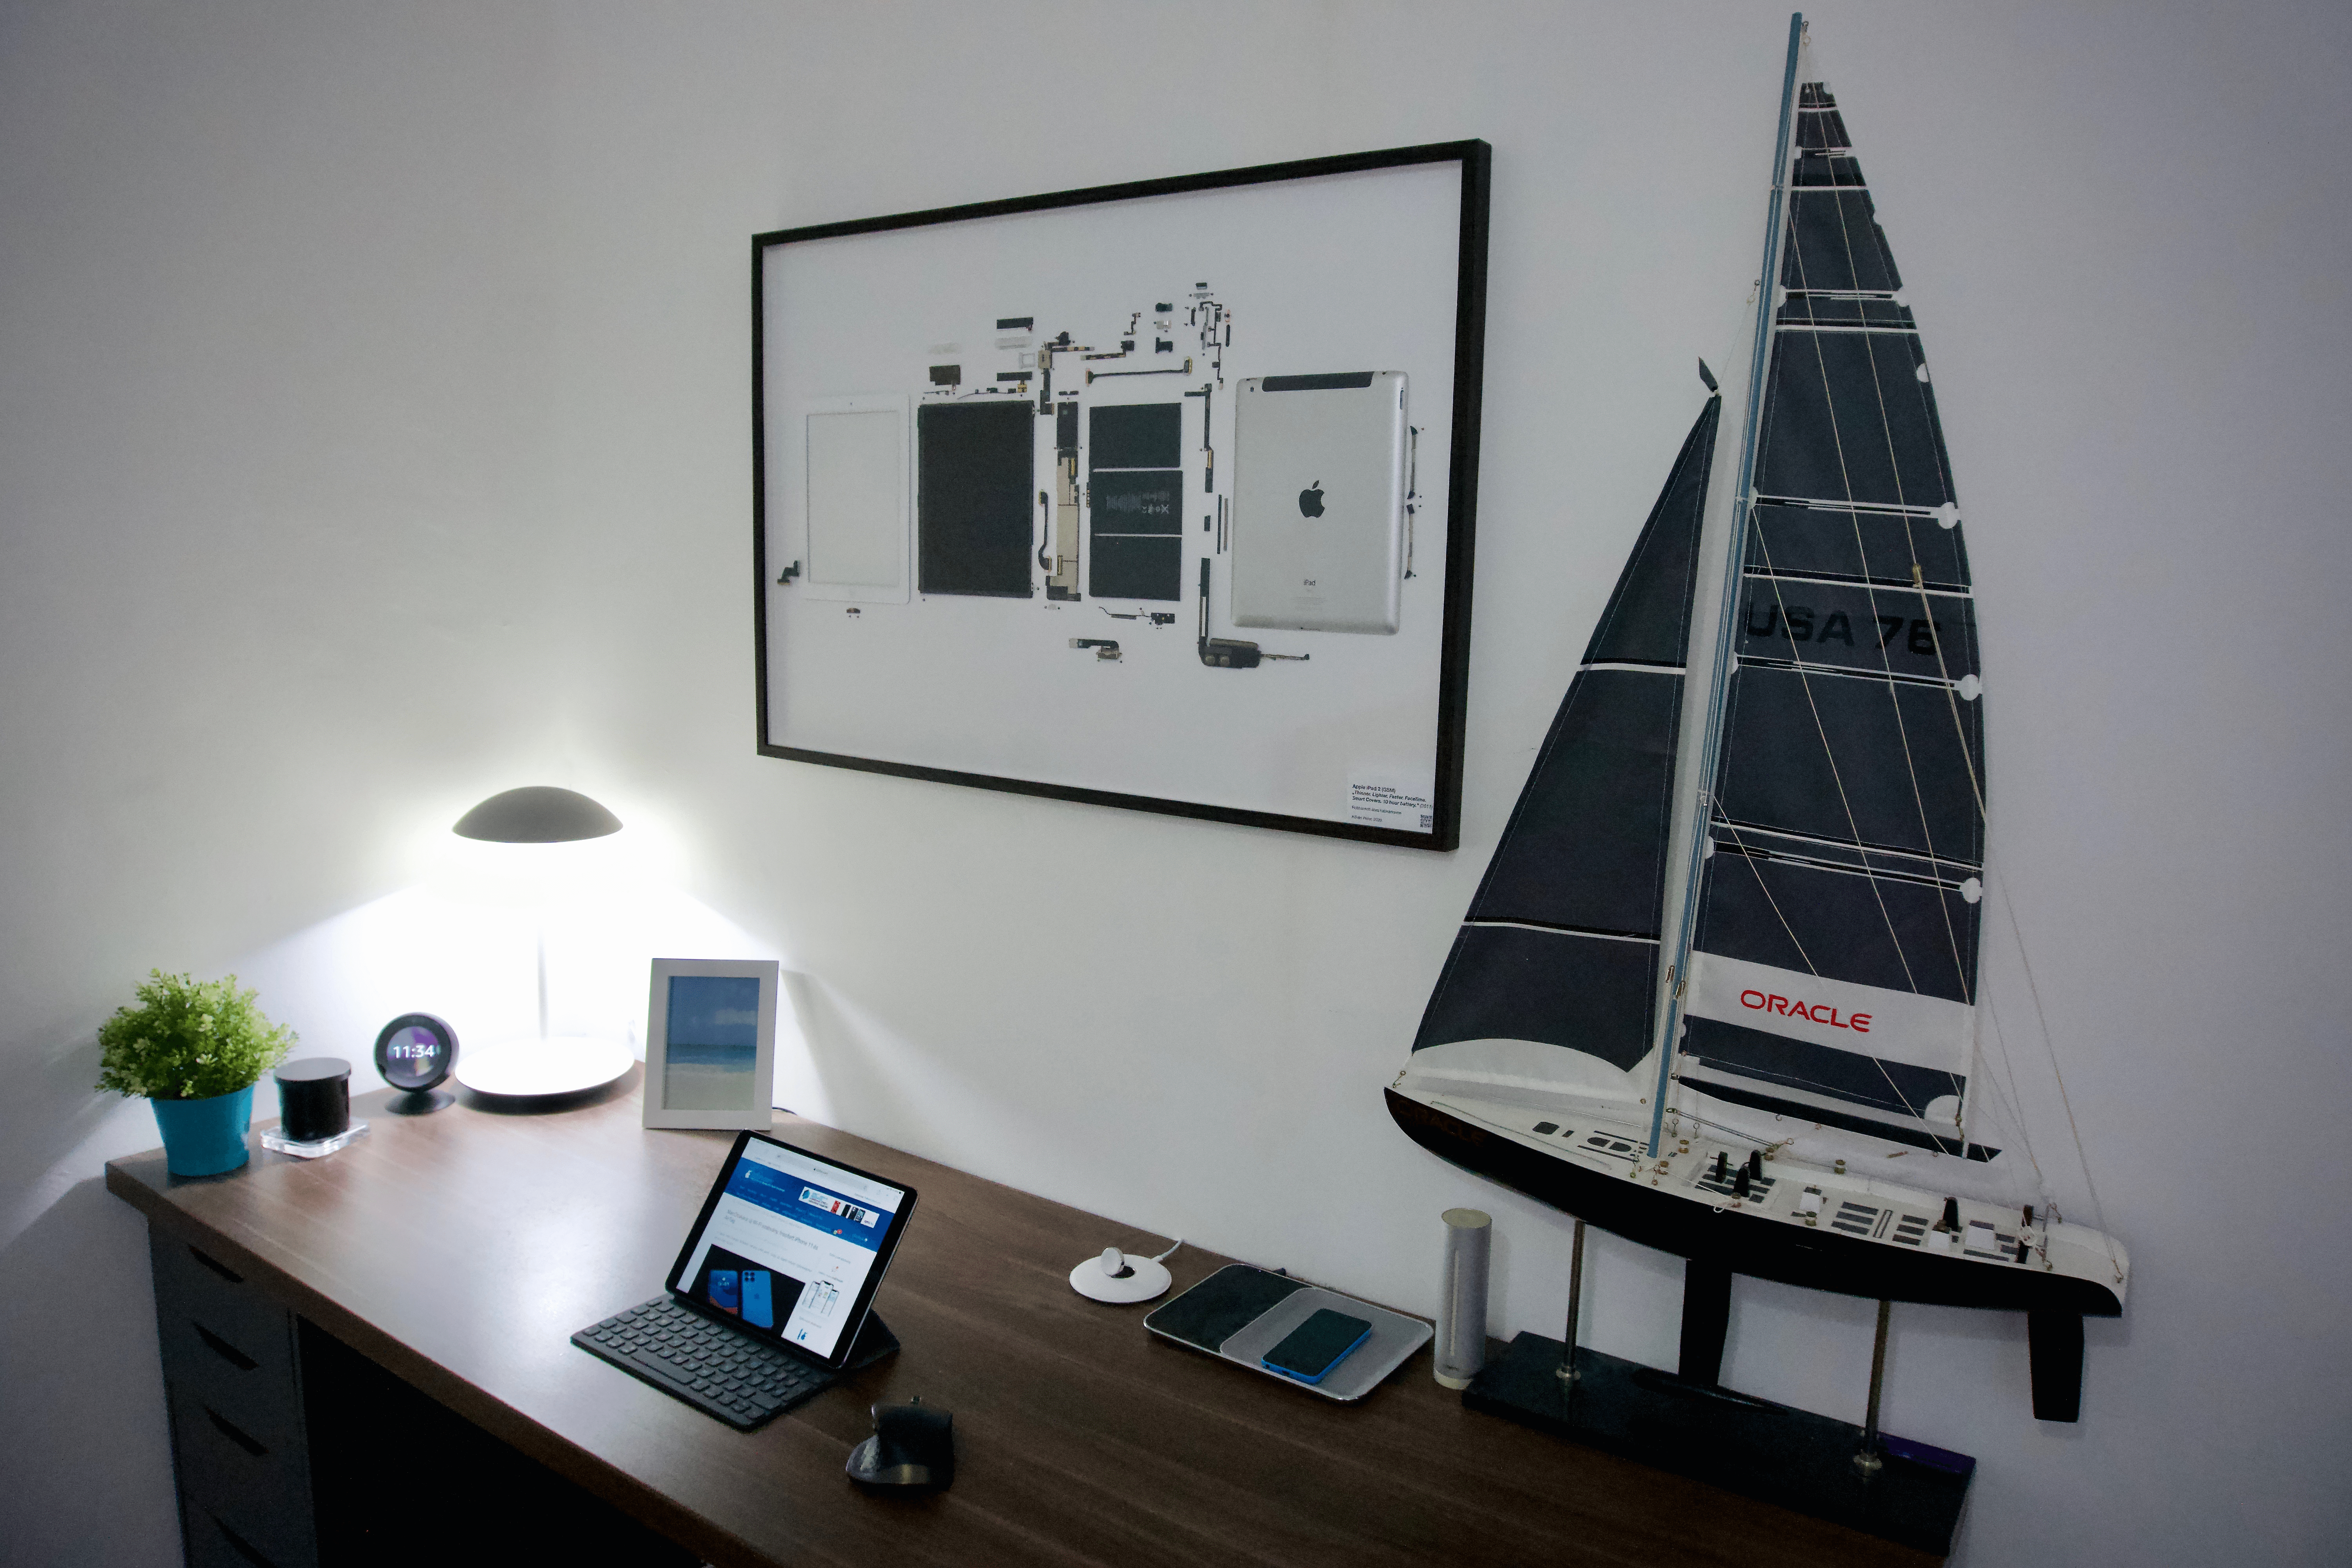 Egy fehér iPad 2 képkeretben, íróasztal fölött a falon.